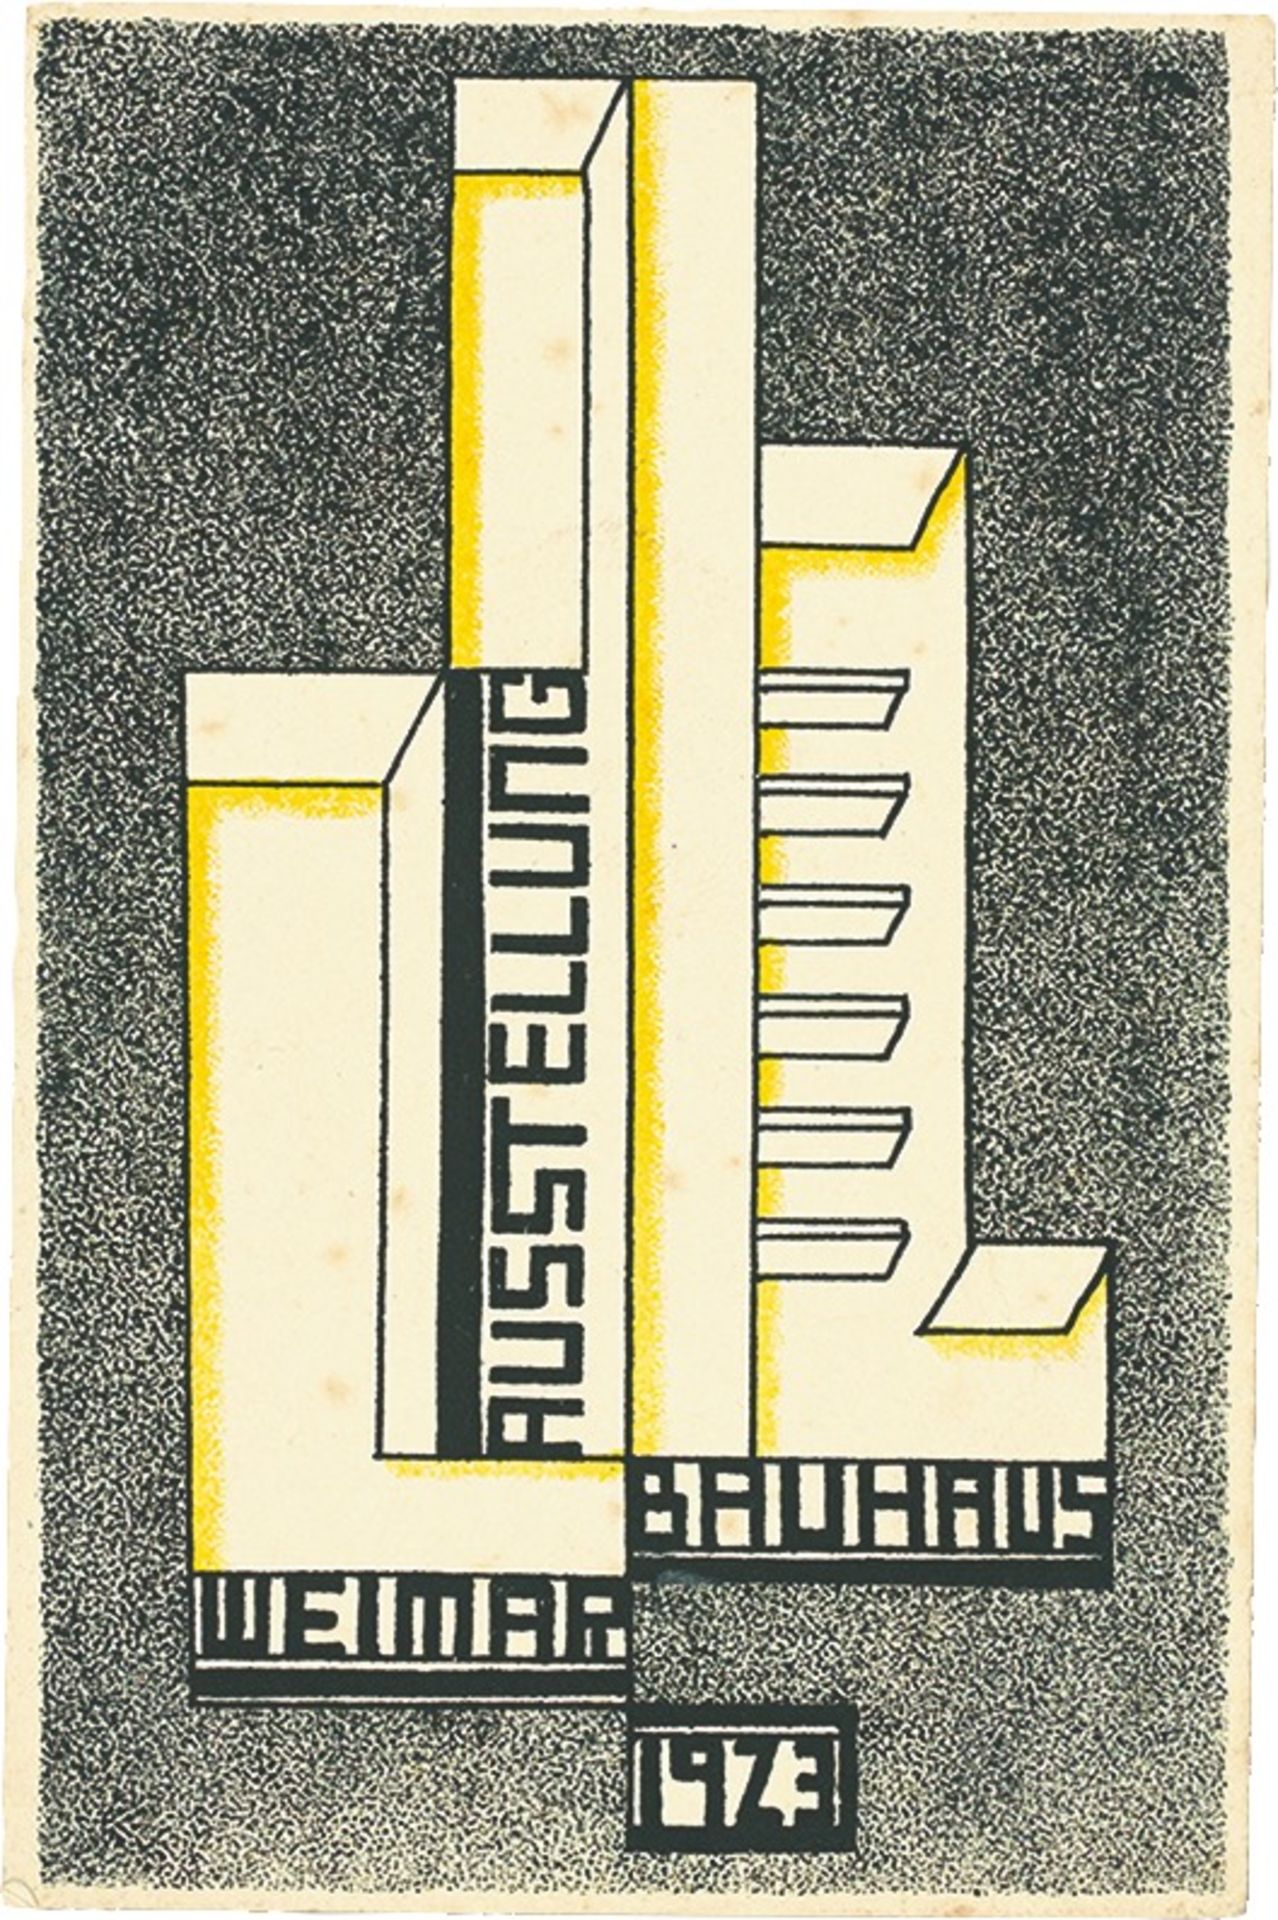 Bauhaus. ”Ausstellung Weimar 1923” – 20 postcards by various Bauhaus artists. 1923 - Image 17 of 20